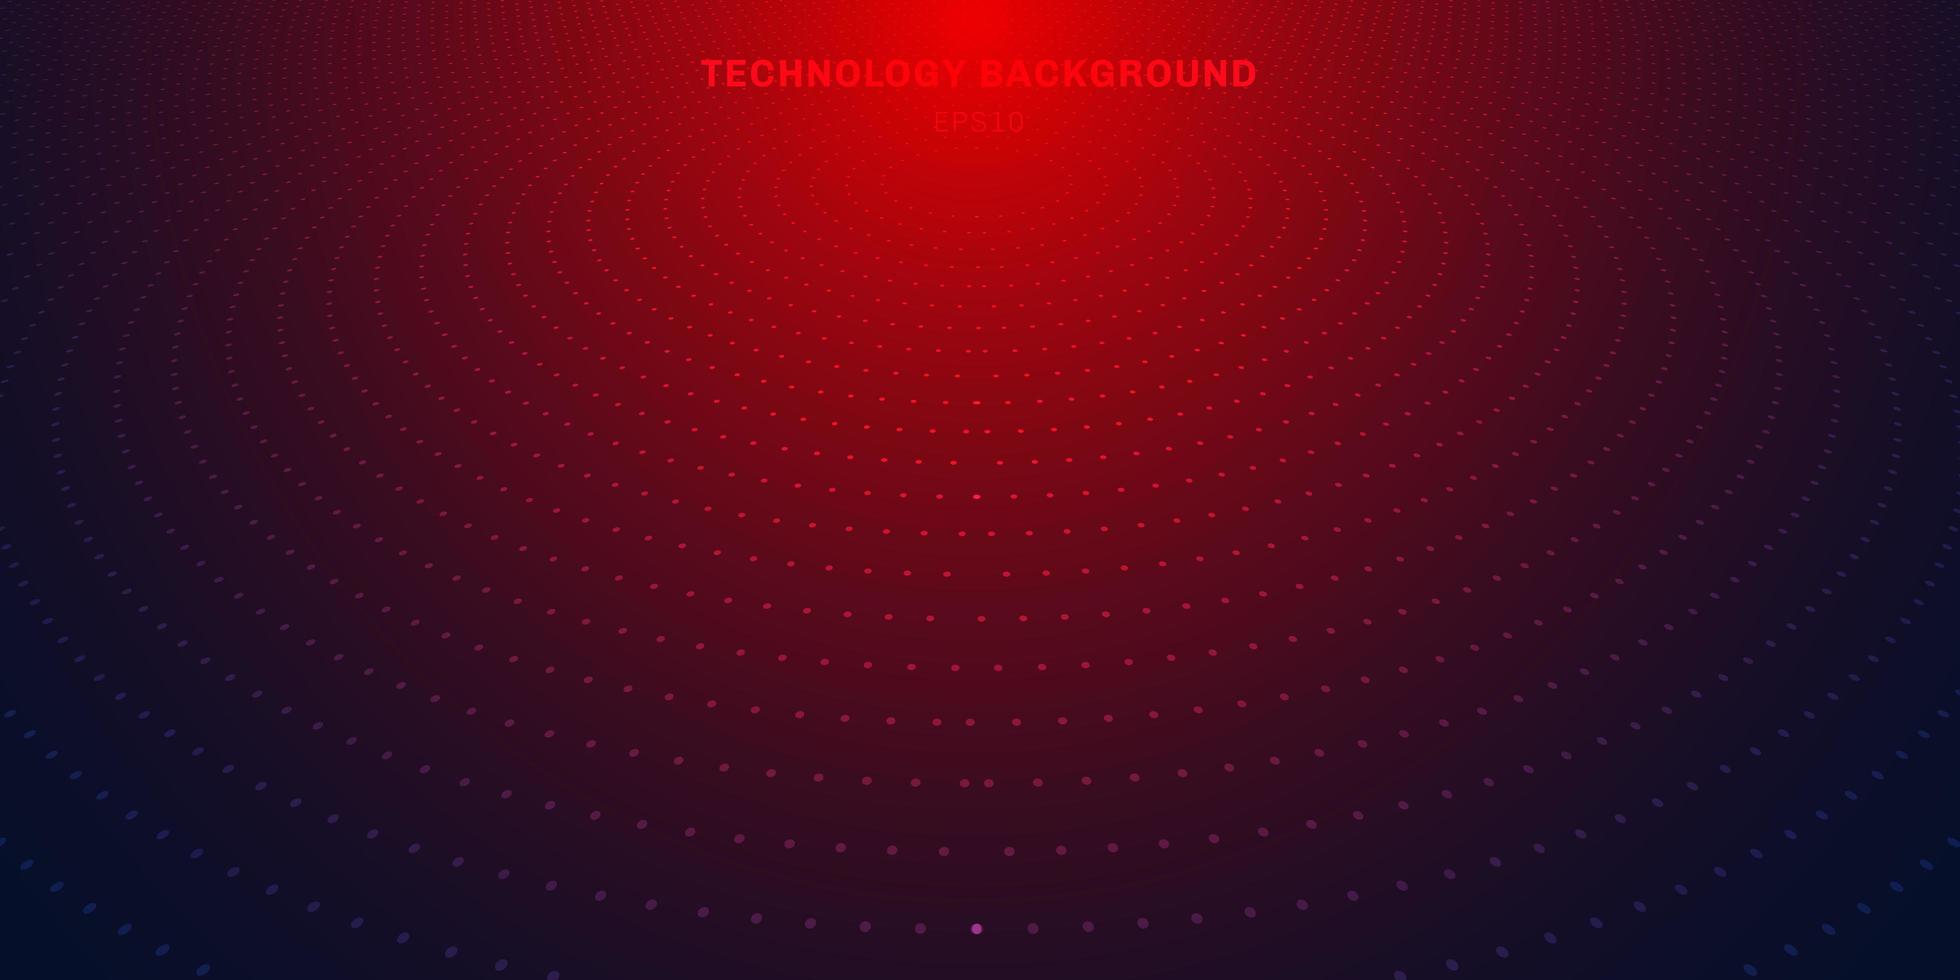 pontos radiais vermelhos abstratos padrão de meio-tom em fundo gradiente azul escuro. iluminação de néon futurista do conceito digital da tecnologia. vetor